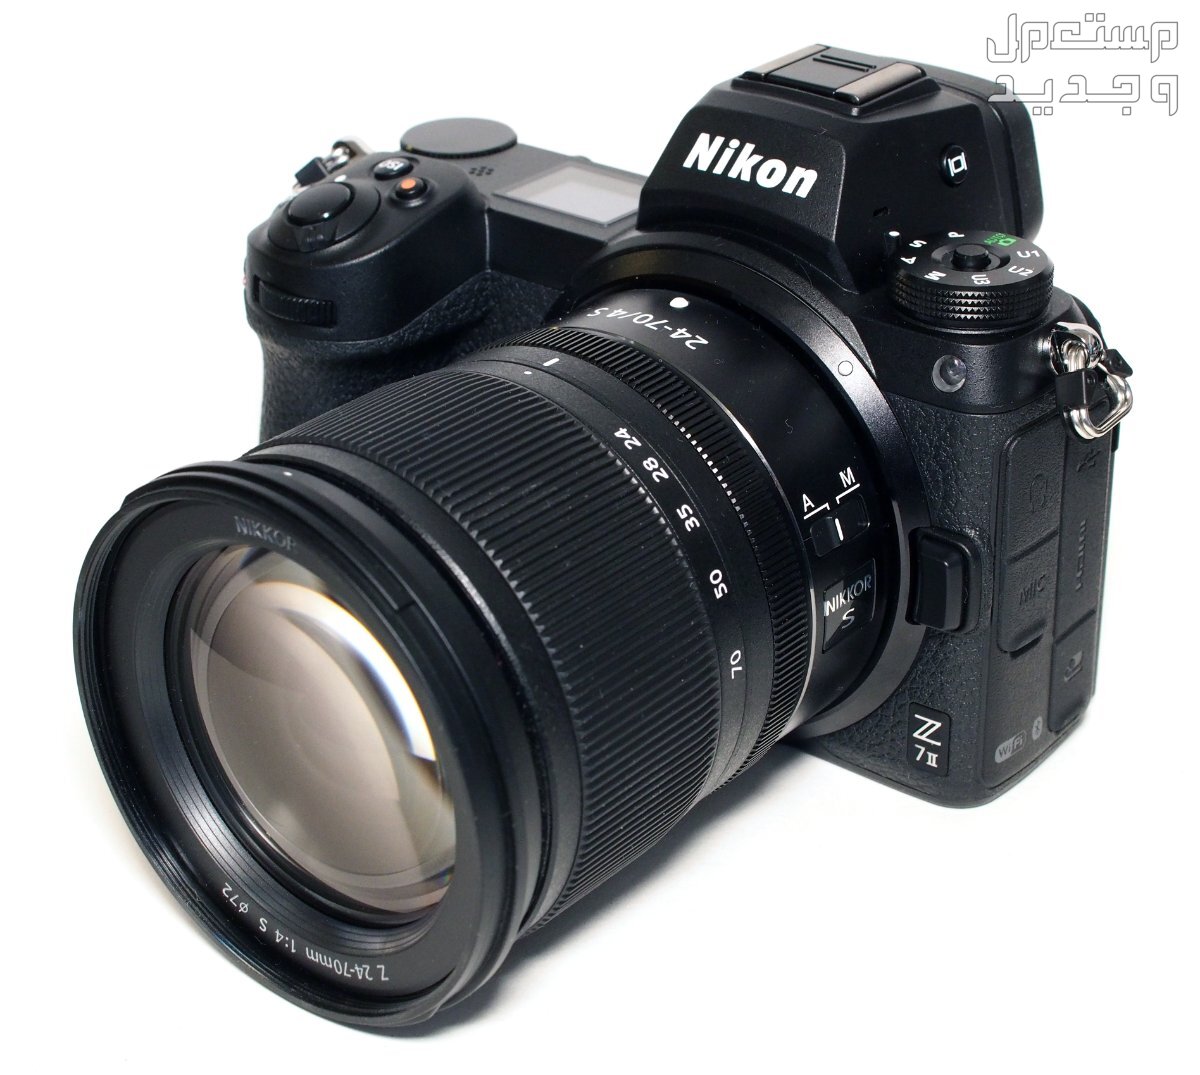 بالصور .. أفضل أنواع الكاميرات ومميزاتها وأسعارها في الإمارات العربية المتحدة كاميرا Nikon Z7